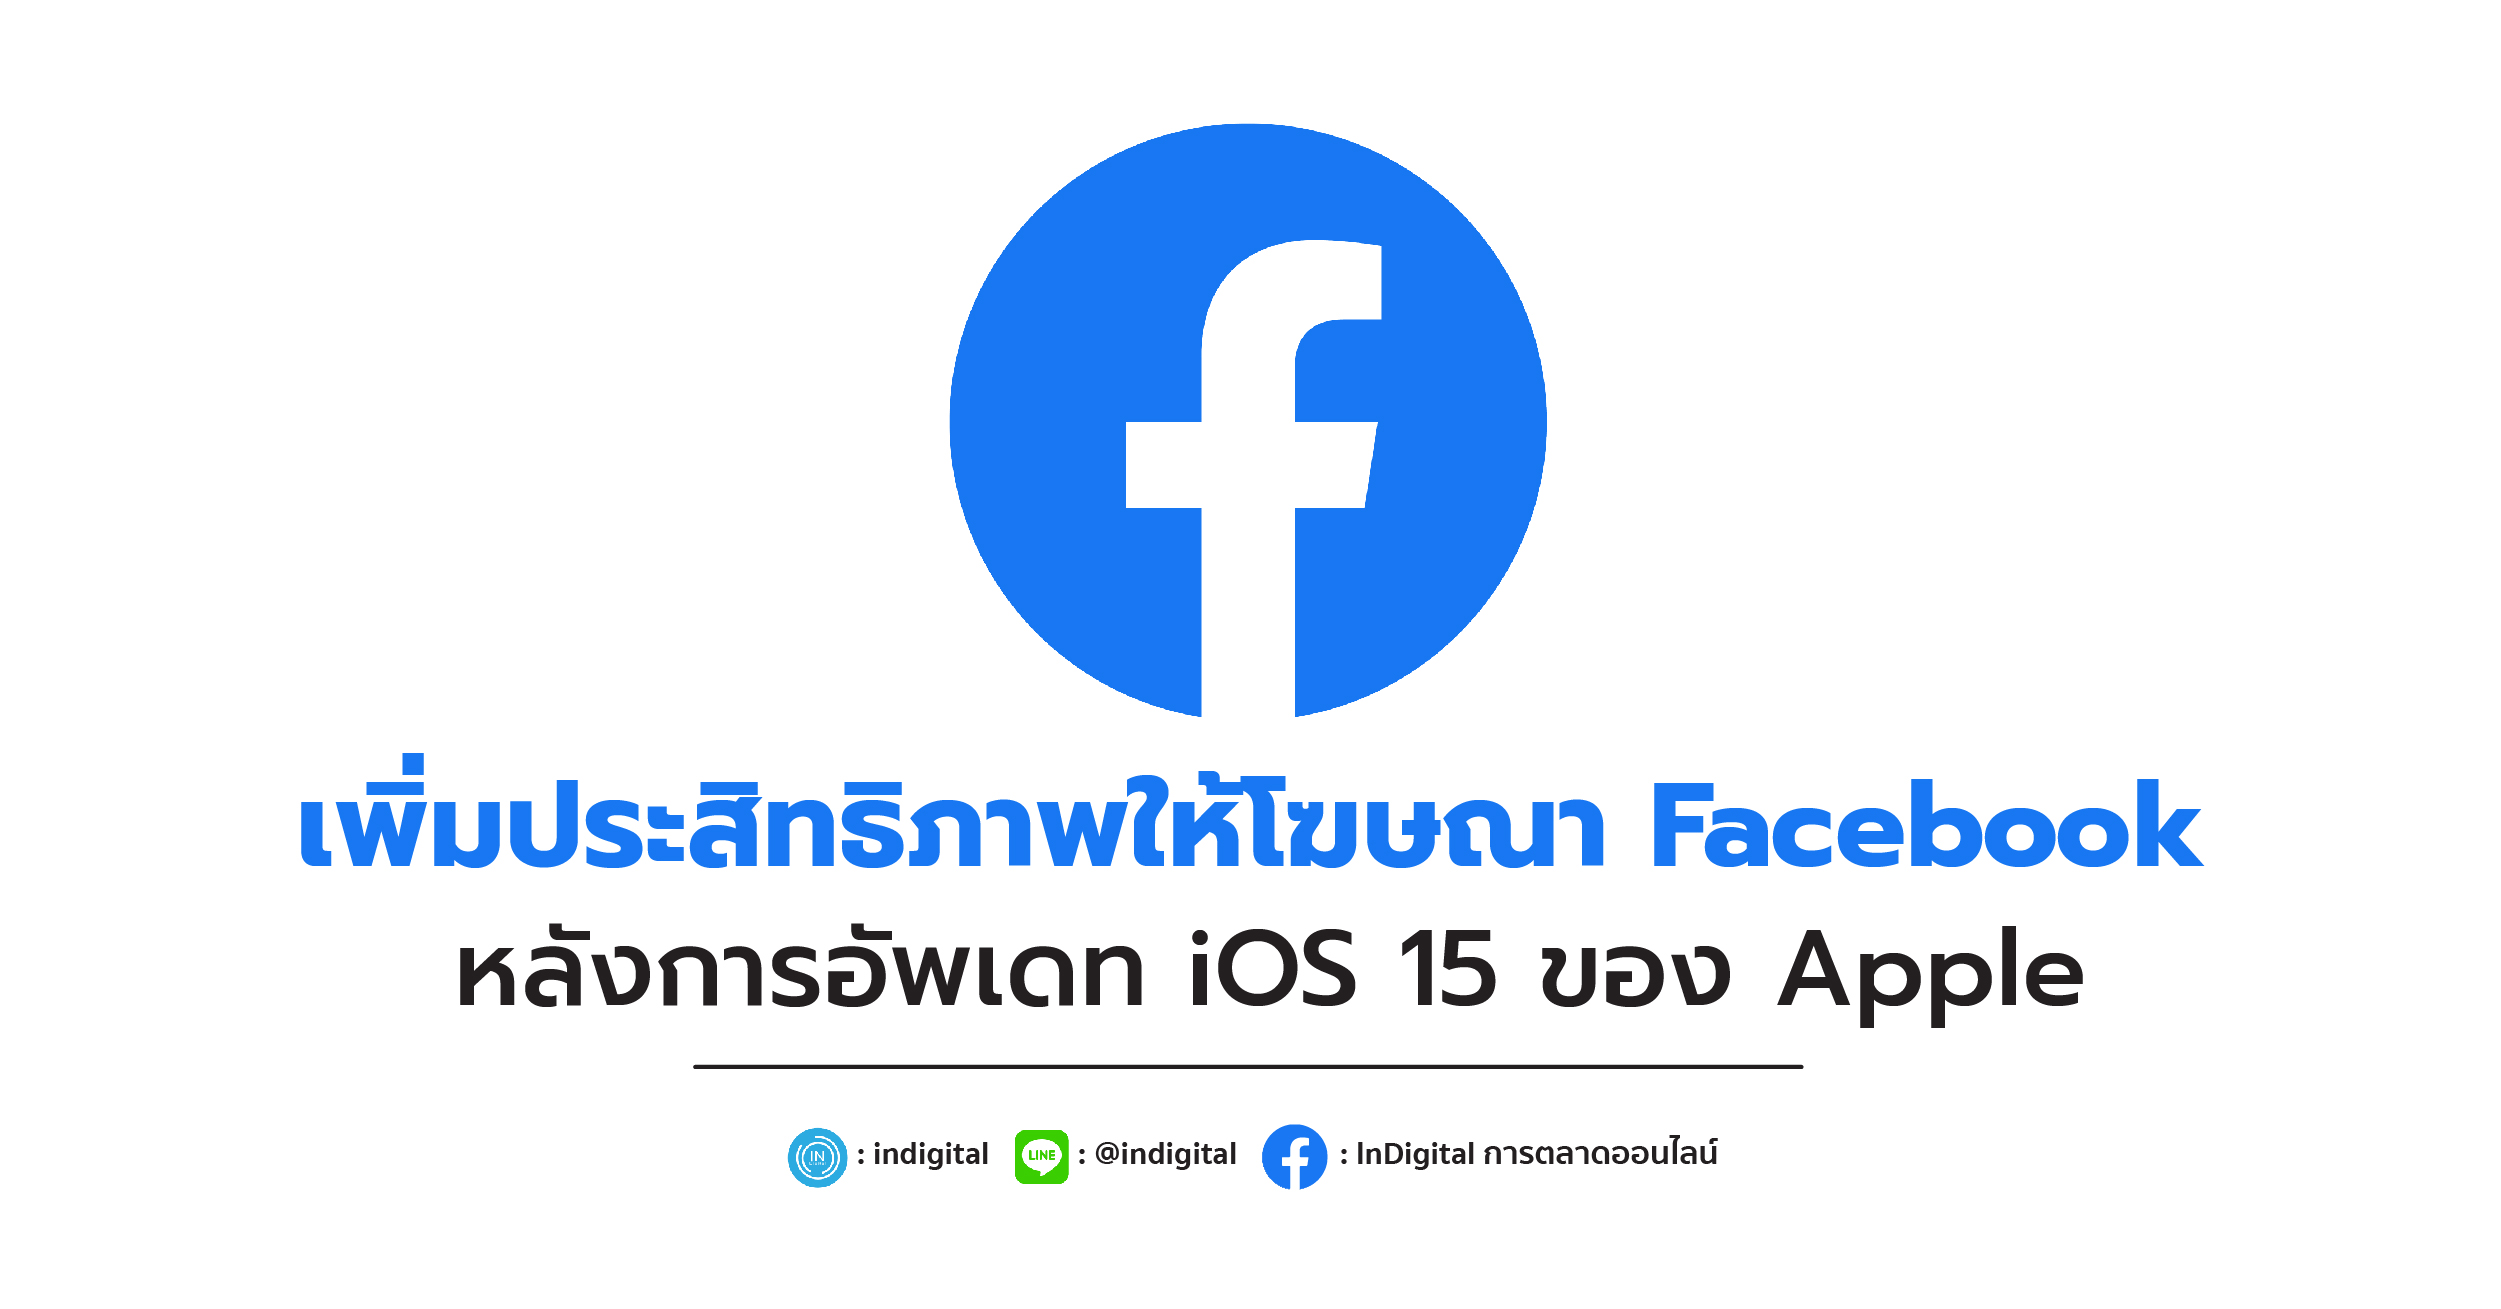 เพิ่มประสิทธิภาพให้โฆษณา Facebook หลังการอัพเดท iOS 15 ของ Apple